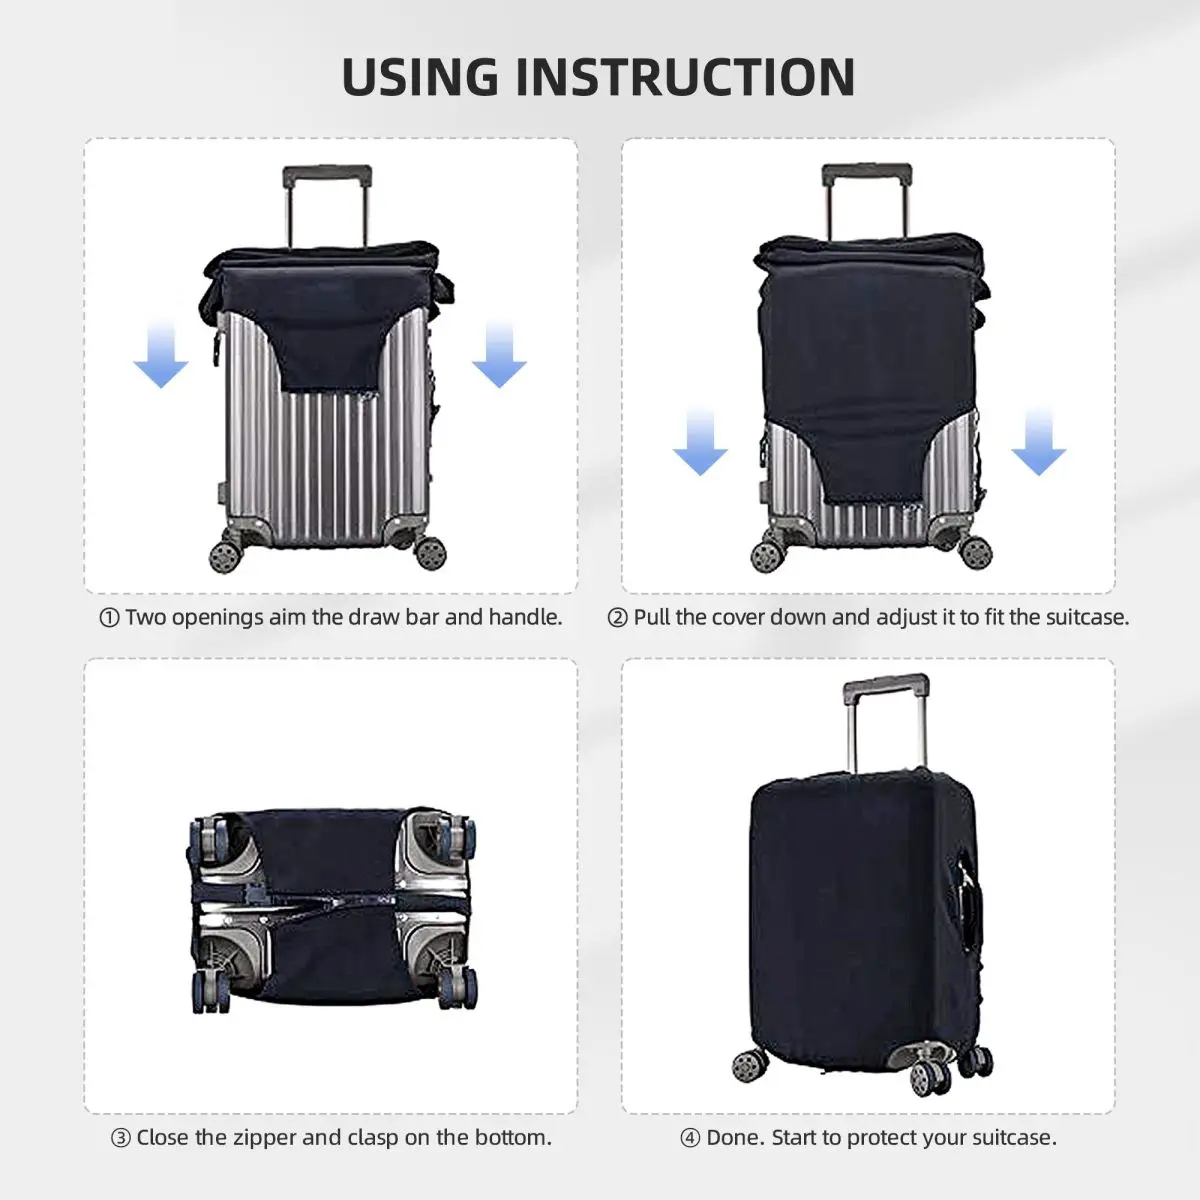 Napfogyatkozás bőrönd huzat Holiday Astronaut rugalmas poggyász kellékek Üzleti védelem - 4